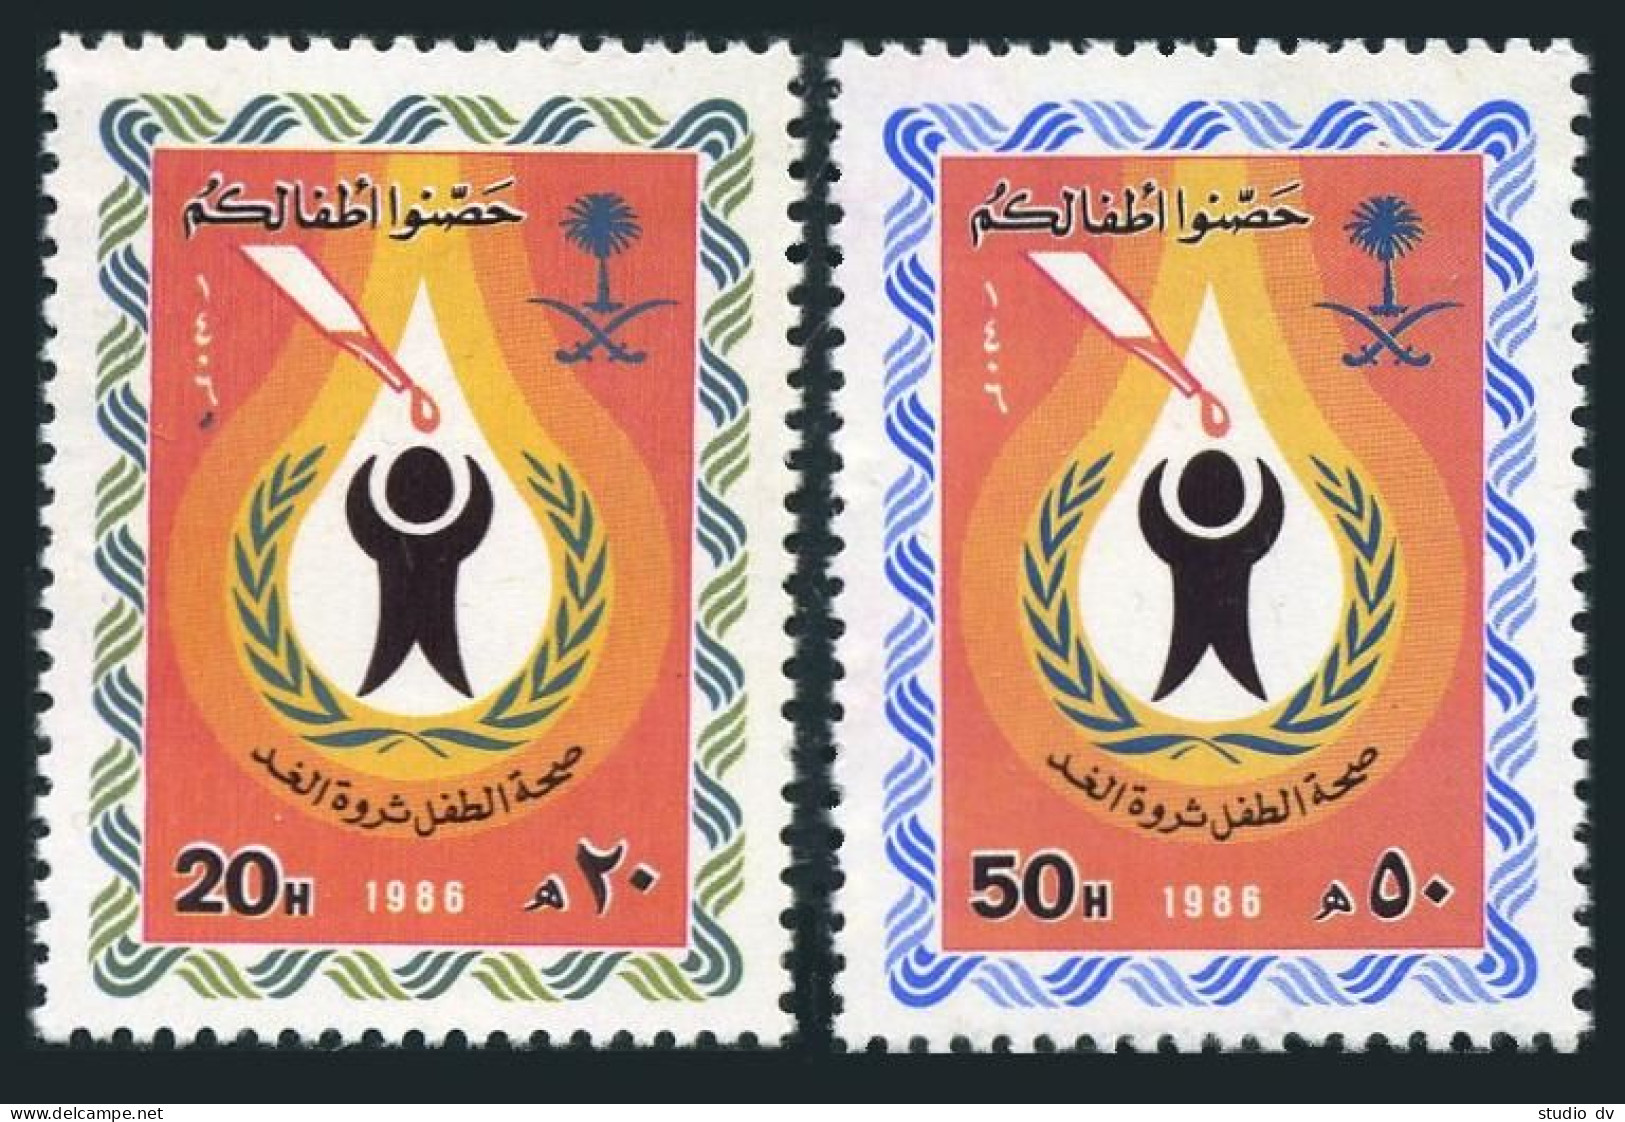 Saudi Arabia 974-975,MNH.Michel 837-838. UN Child Survival Campaign,1986. - Saudi Arabia